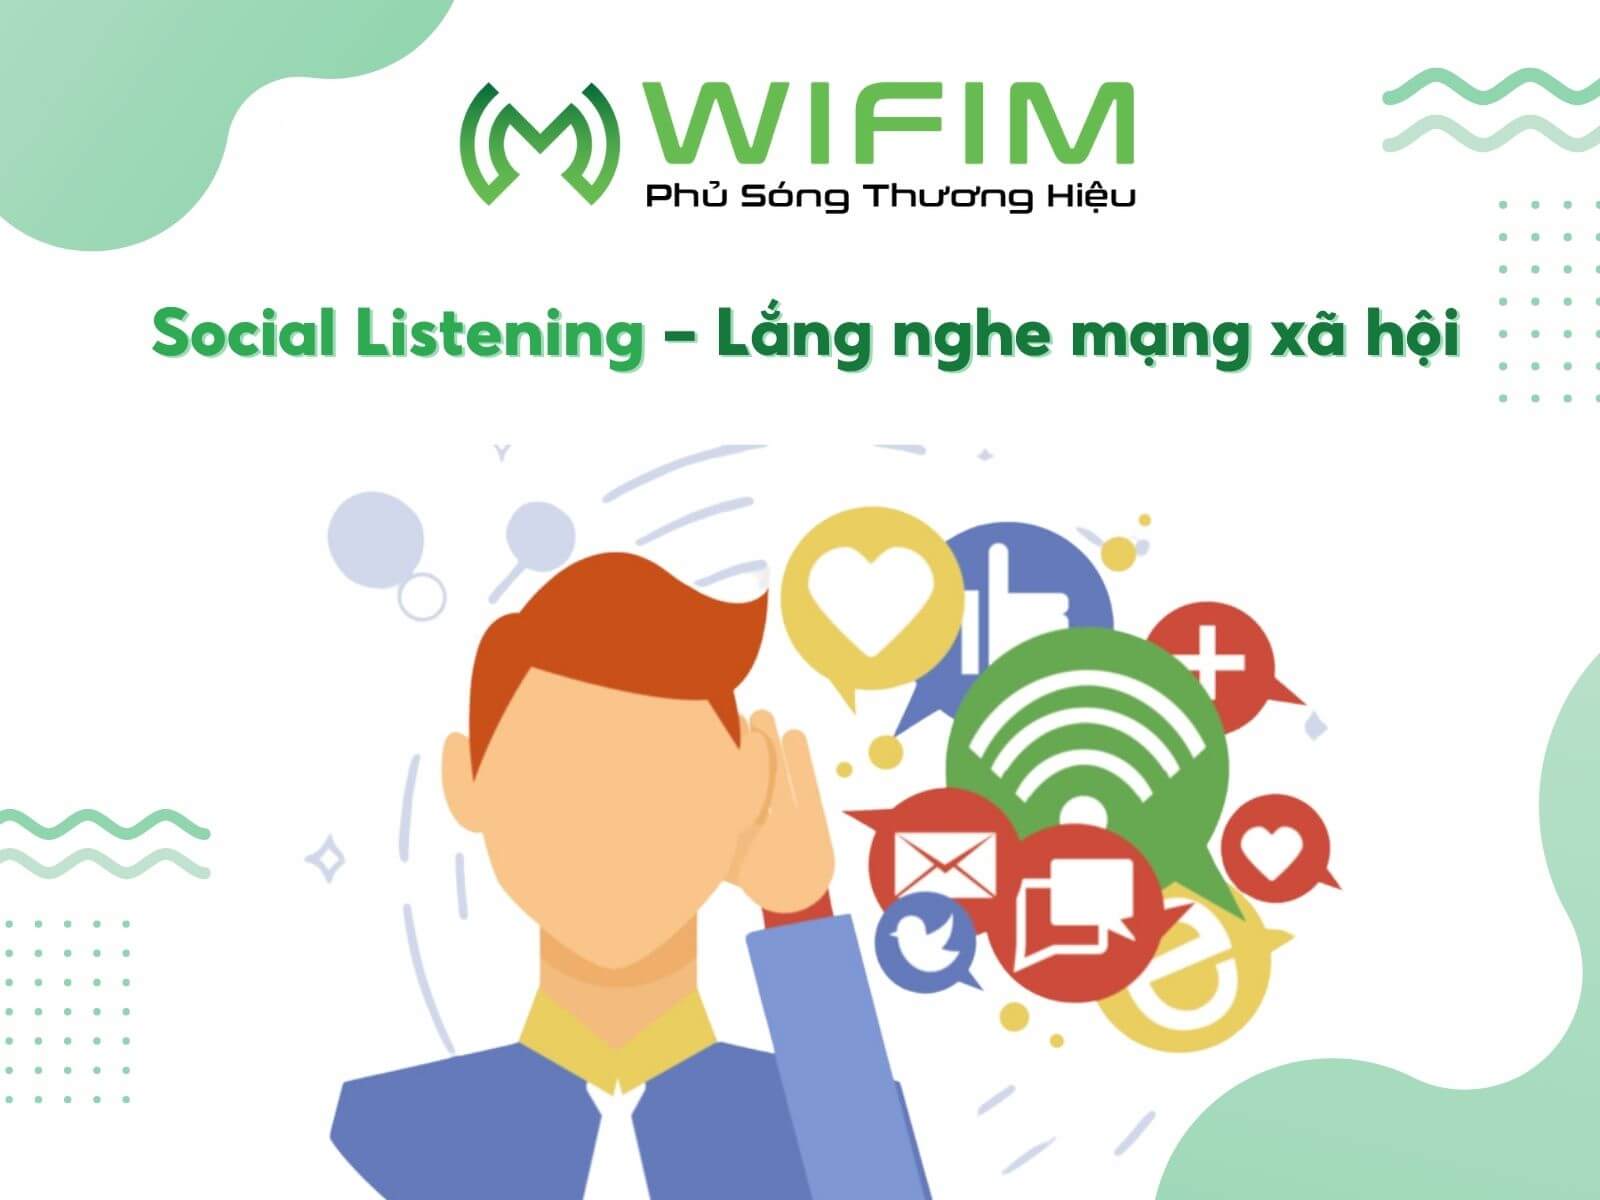 Social listening - lắng nghe mạng xã hội 